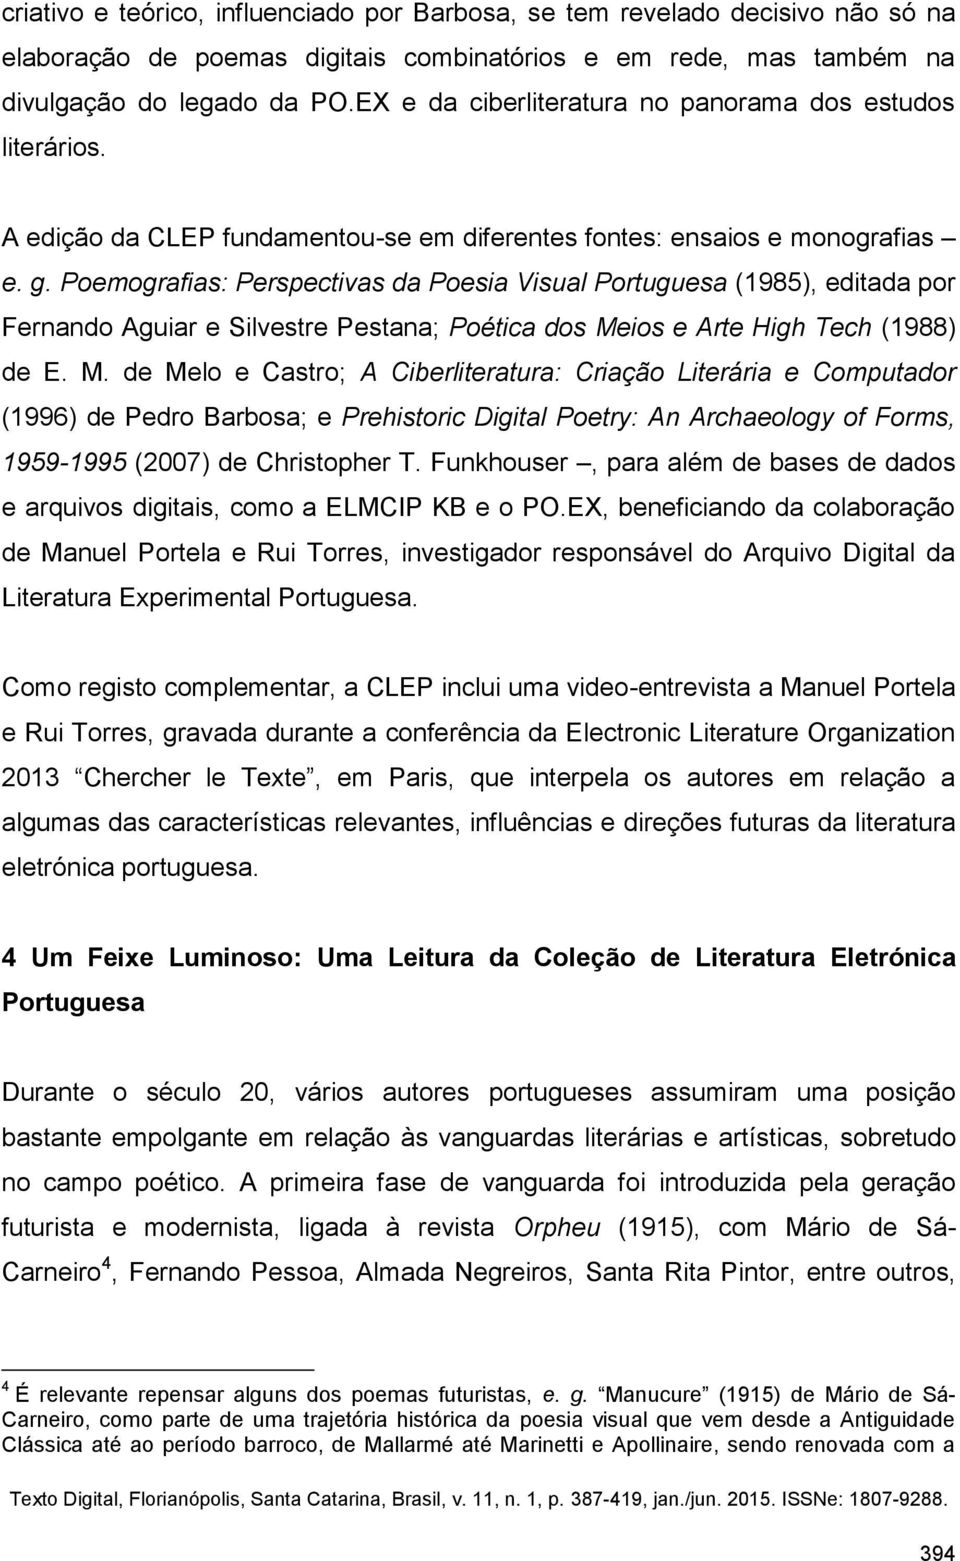 Poemografias: Perspectivas da Poesia Visual Portuguesa (1985), editada por Fernando Aguiar e Silvestre Pestana; Poética dos Me